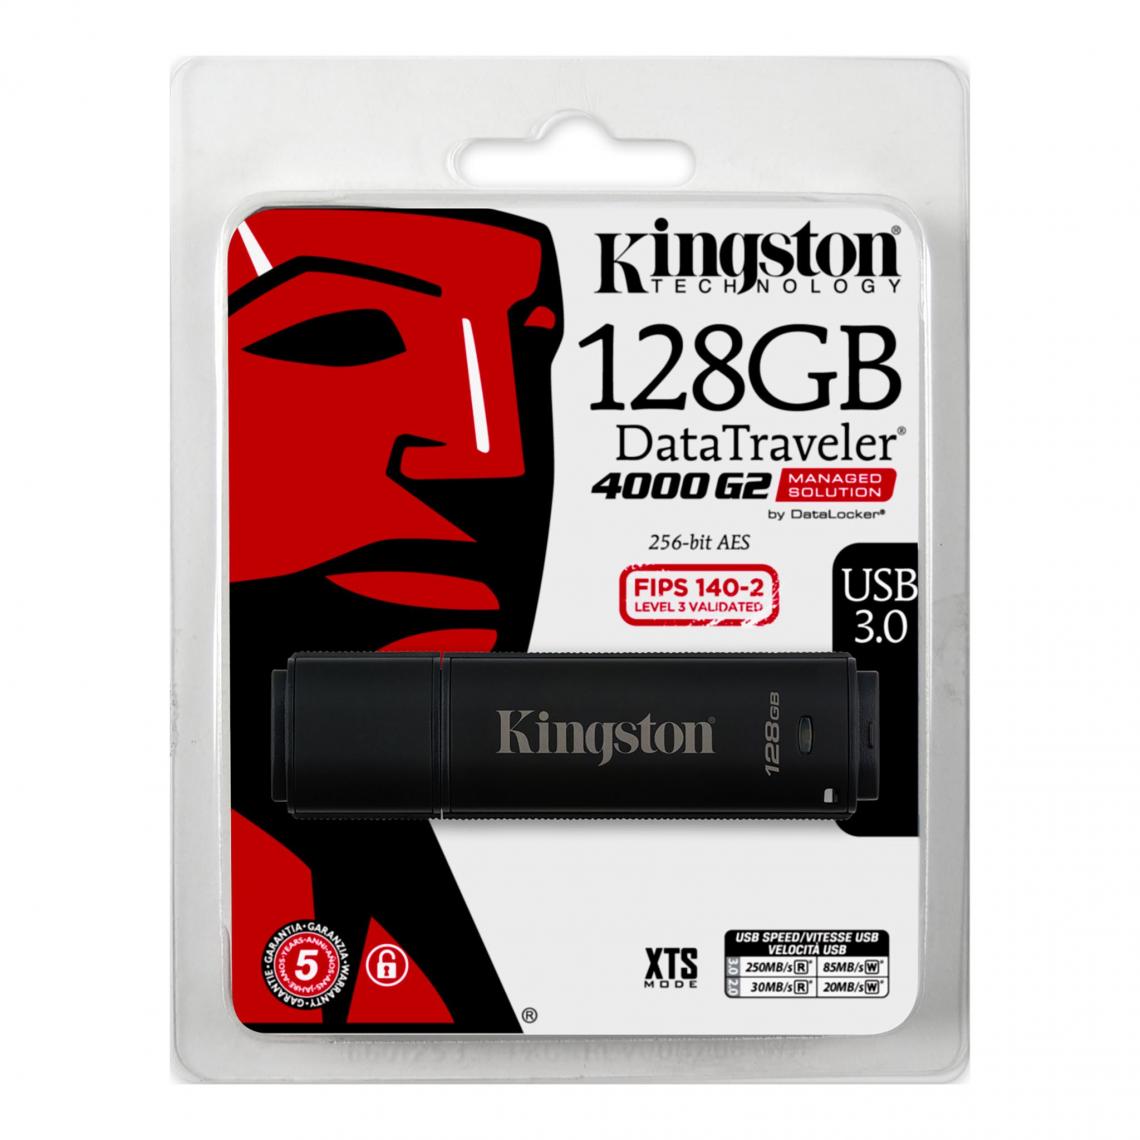 Kingston - 128Go DT4000G2DM 256bit Encrypt 128Go DT4000G2DM 256bit Encrypt FIPS 140-2 DL Management - Clés USB